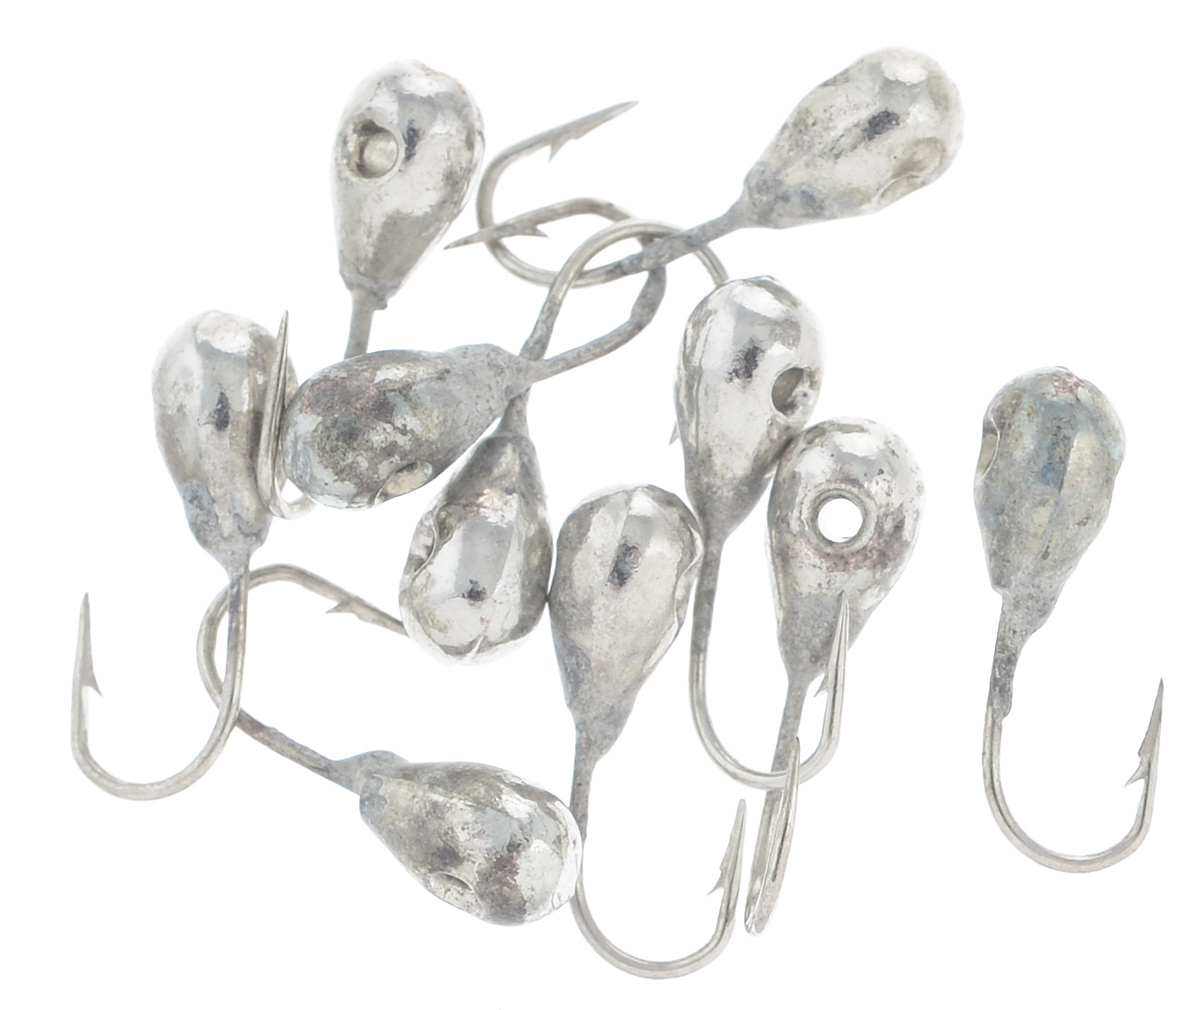 Мормышка вольфрамовая Dixxon-Russia, капля с отверстием, цвет: серебряный, диаметр 3 мм, 0,35 г, 10 шт